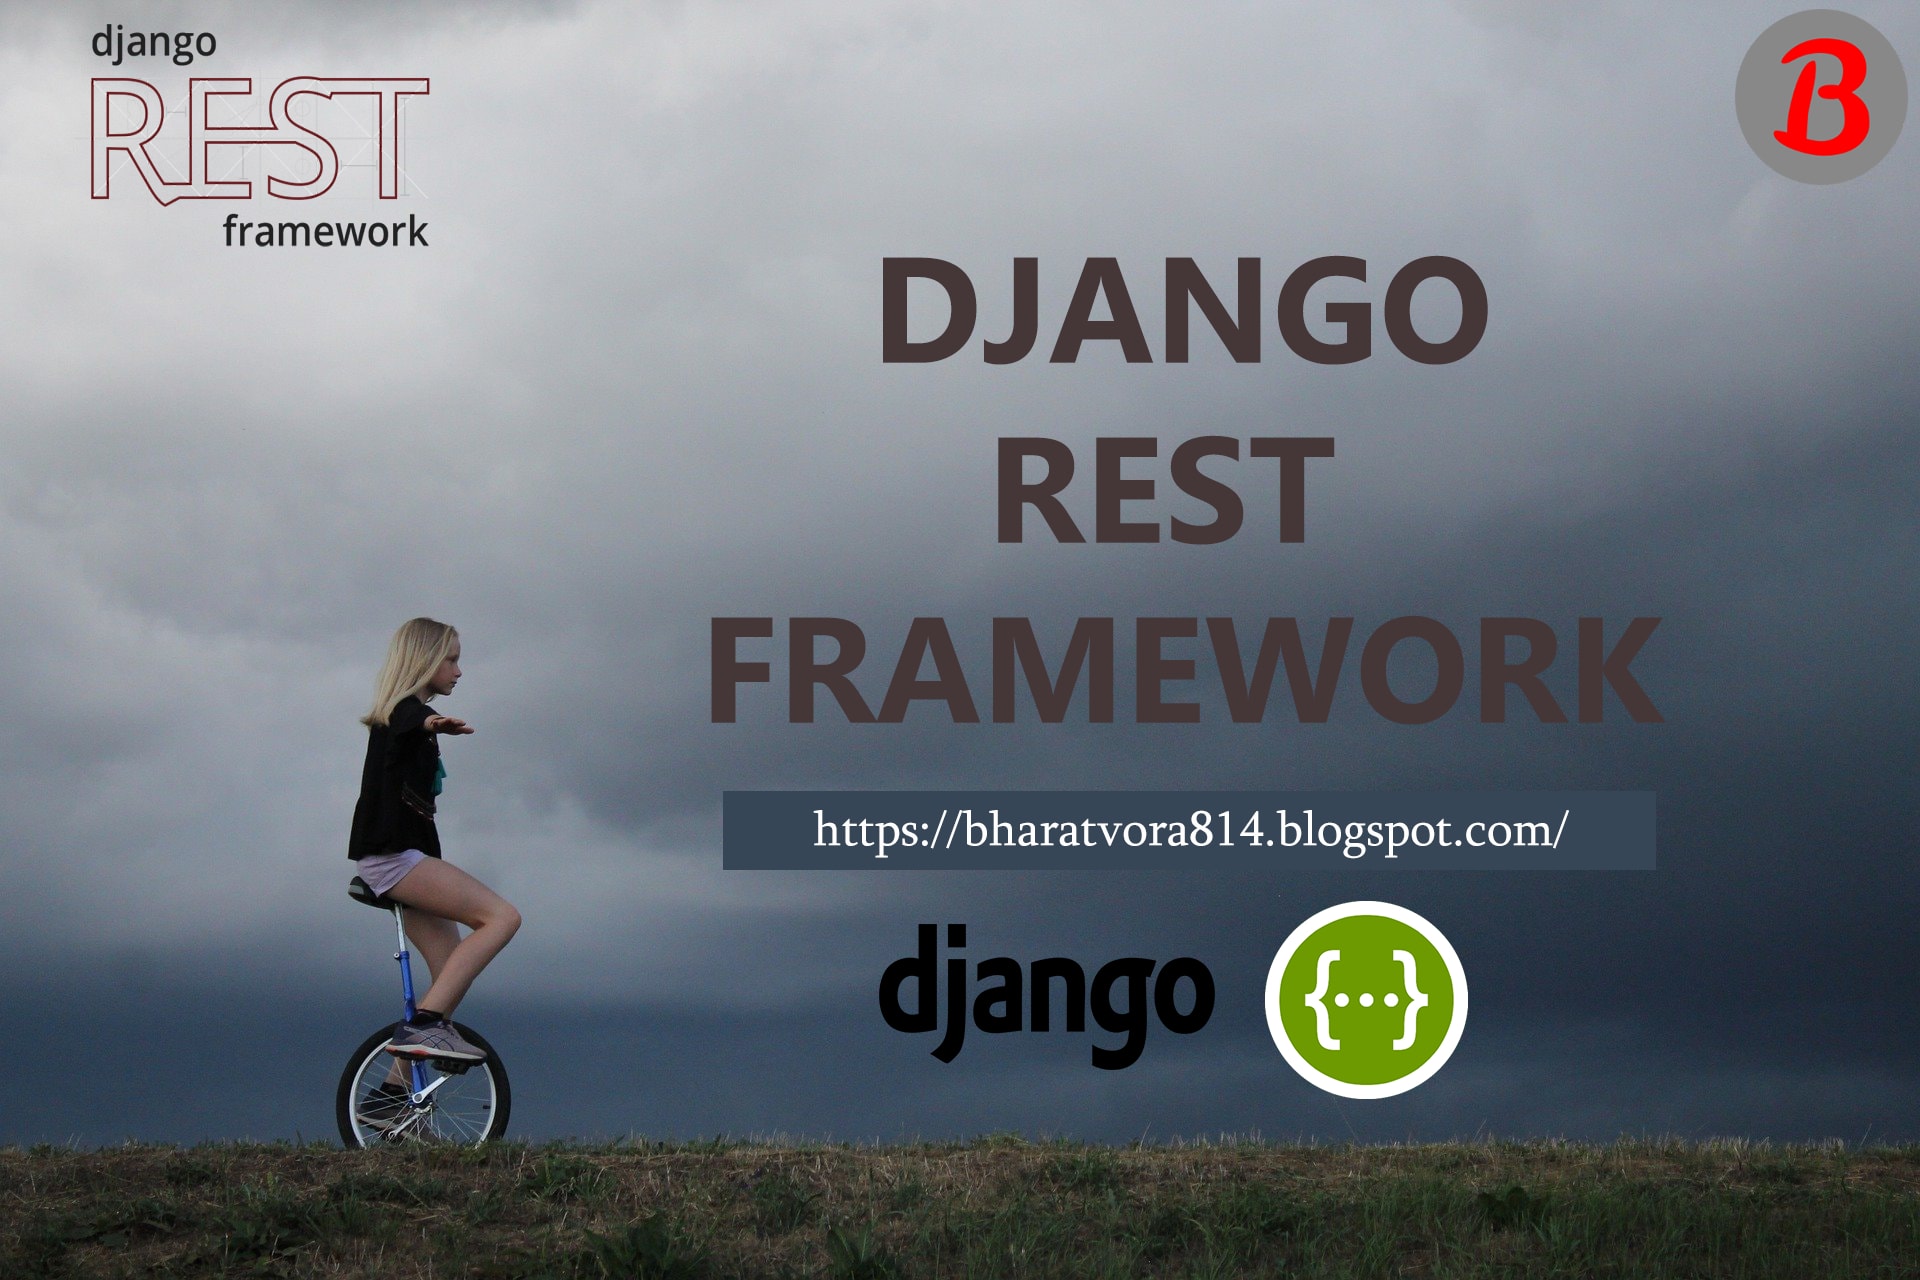 wagtail django rest framework